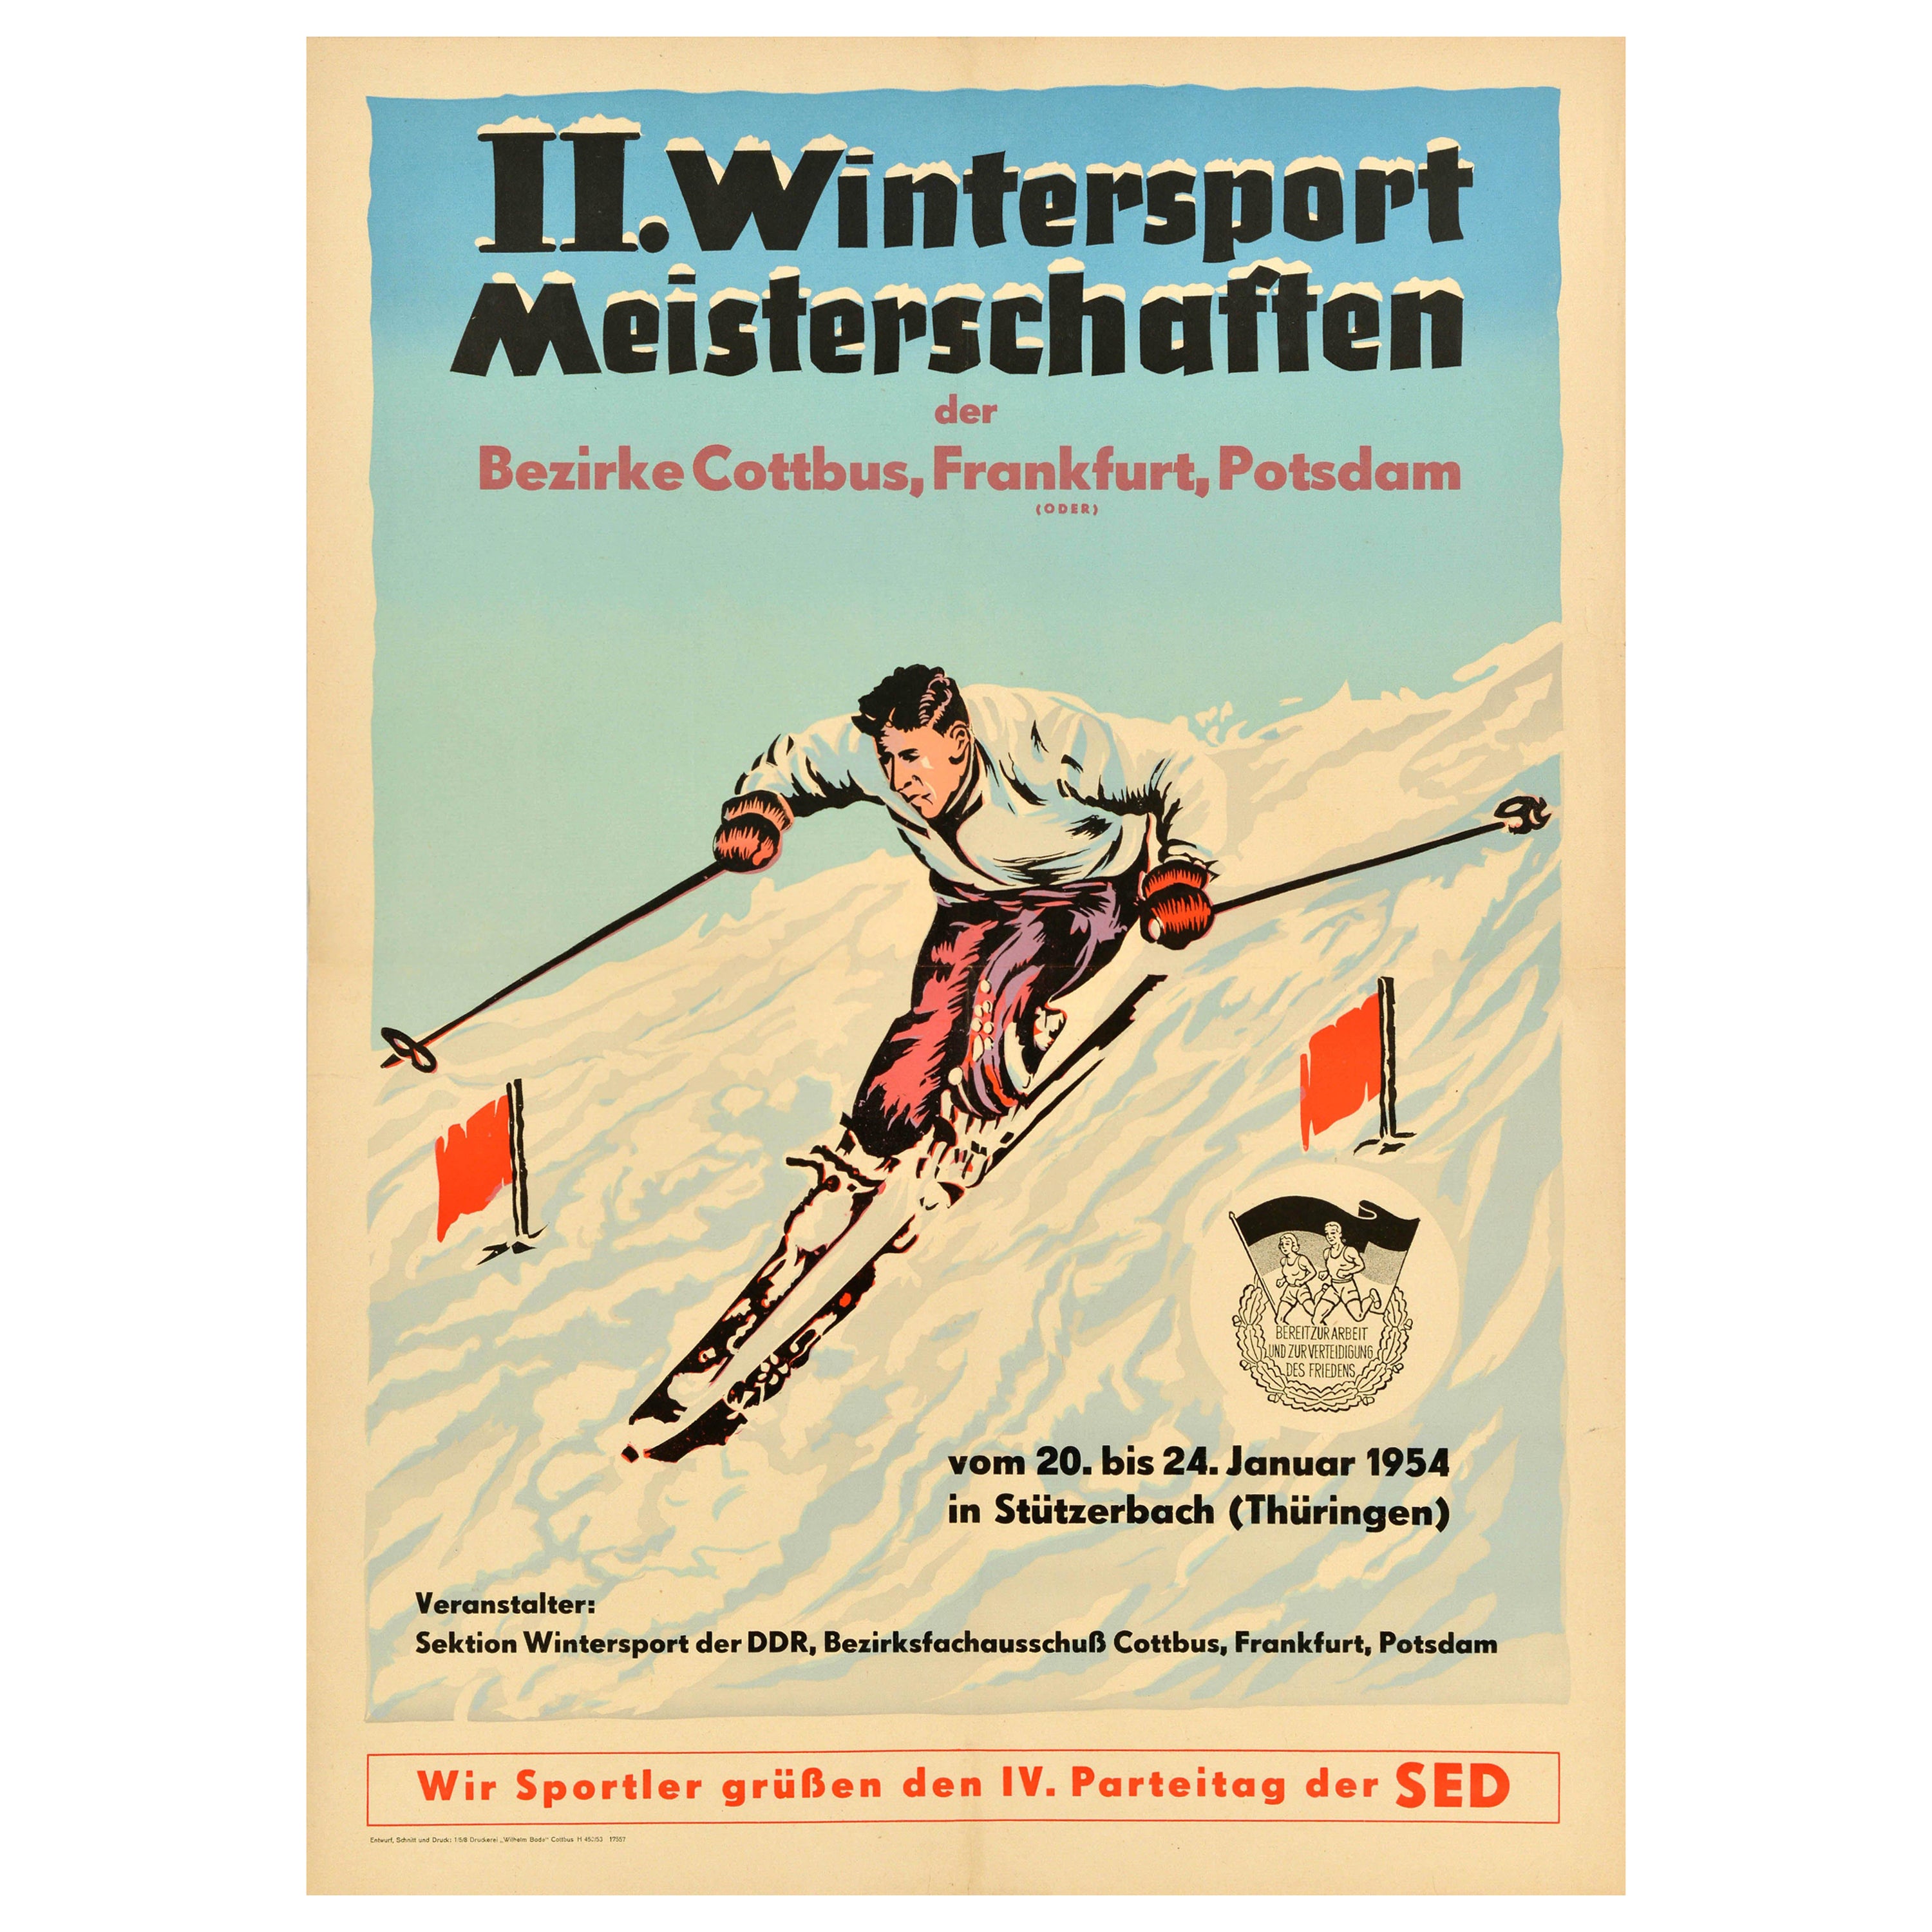 Original Vintage Poster Winter Sport Meisterschaften Championship Ski Slalom Art For Sale